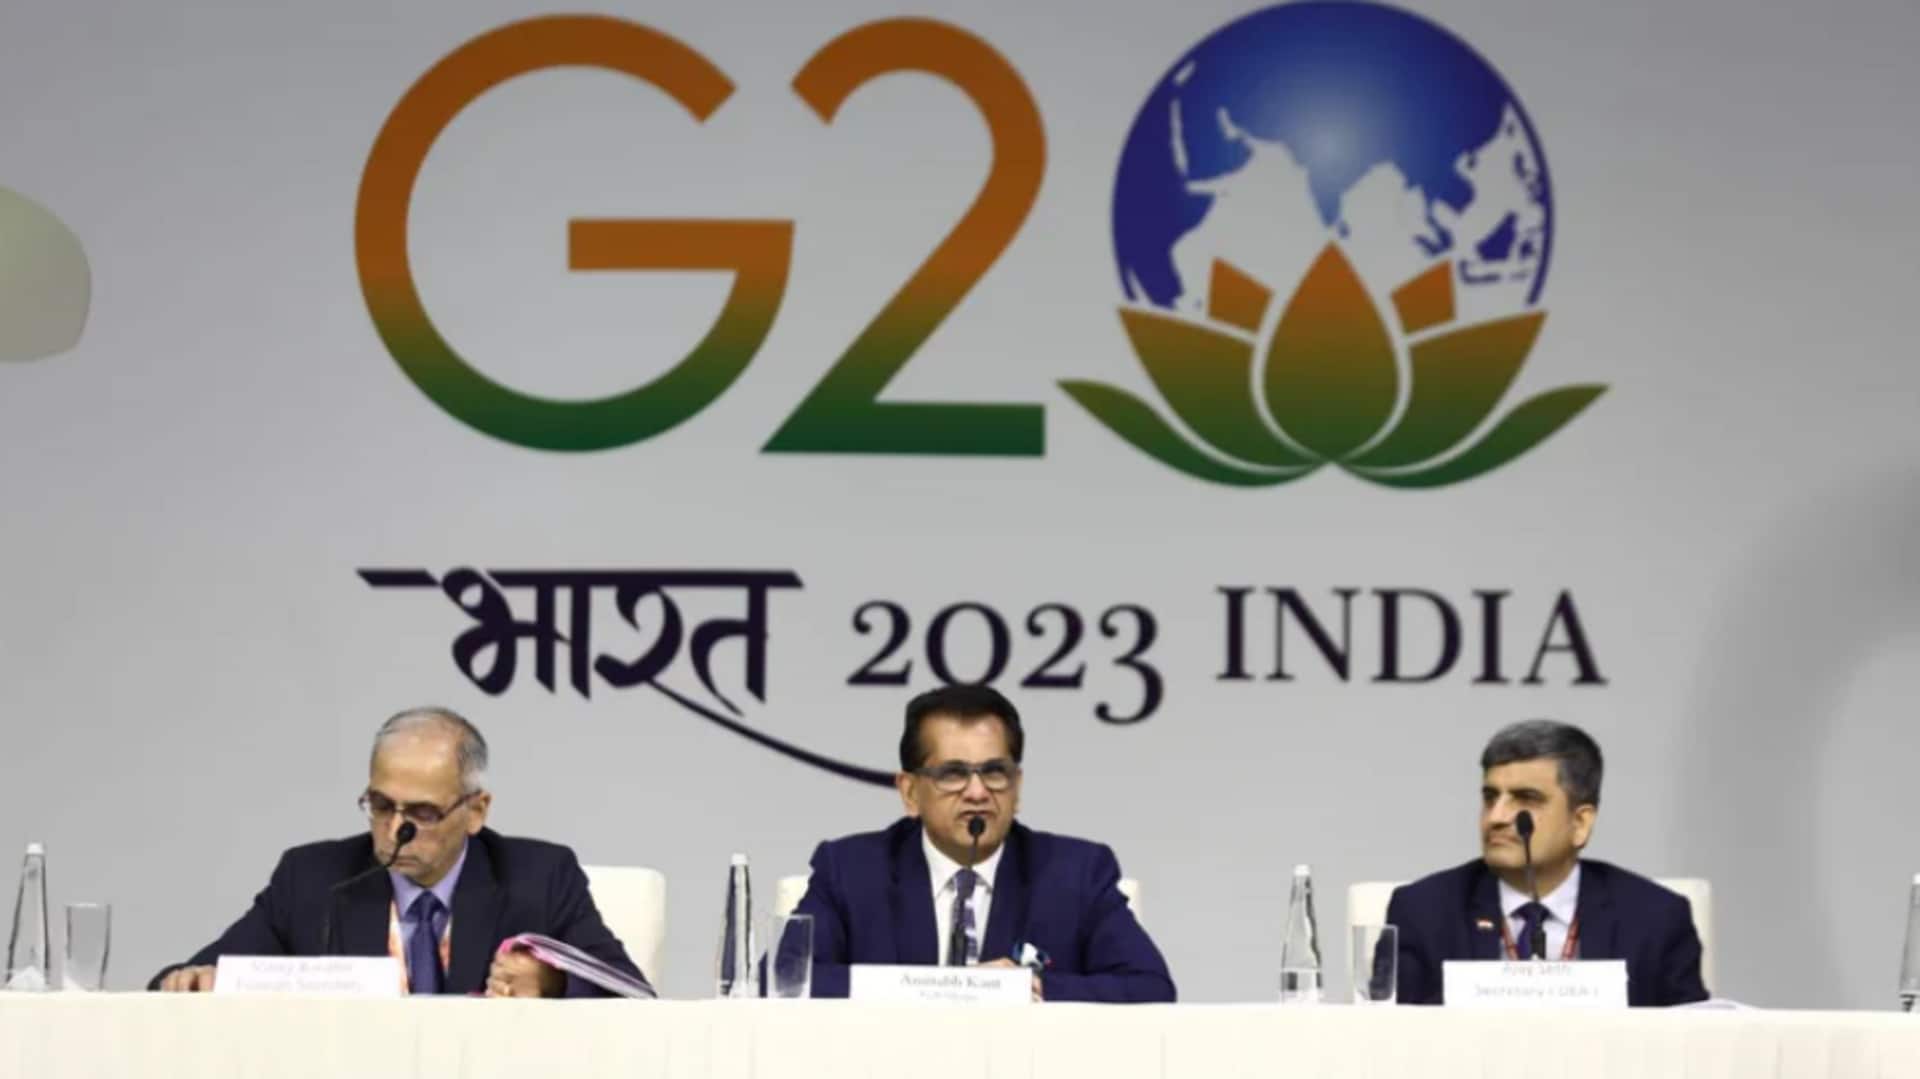 G-20 డిక్లరేషన్ రెడి, ప్రపంచ దేశాధినేతల ఆమోదం తర్వాత పూర్తిగా వెల్లడిస్తాం - షెర్పా అమితాబ్ కాంత్